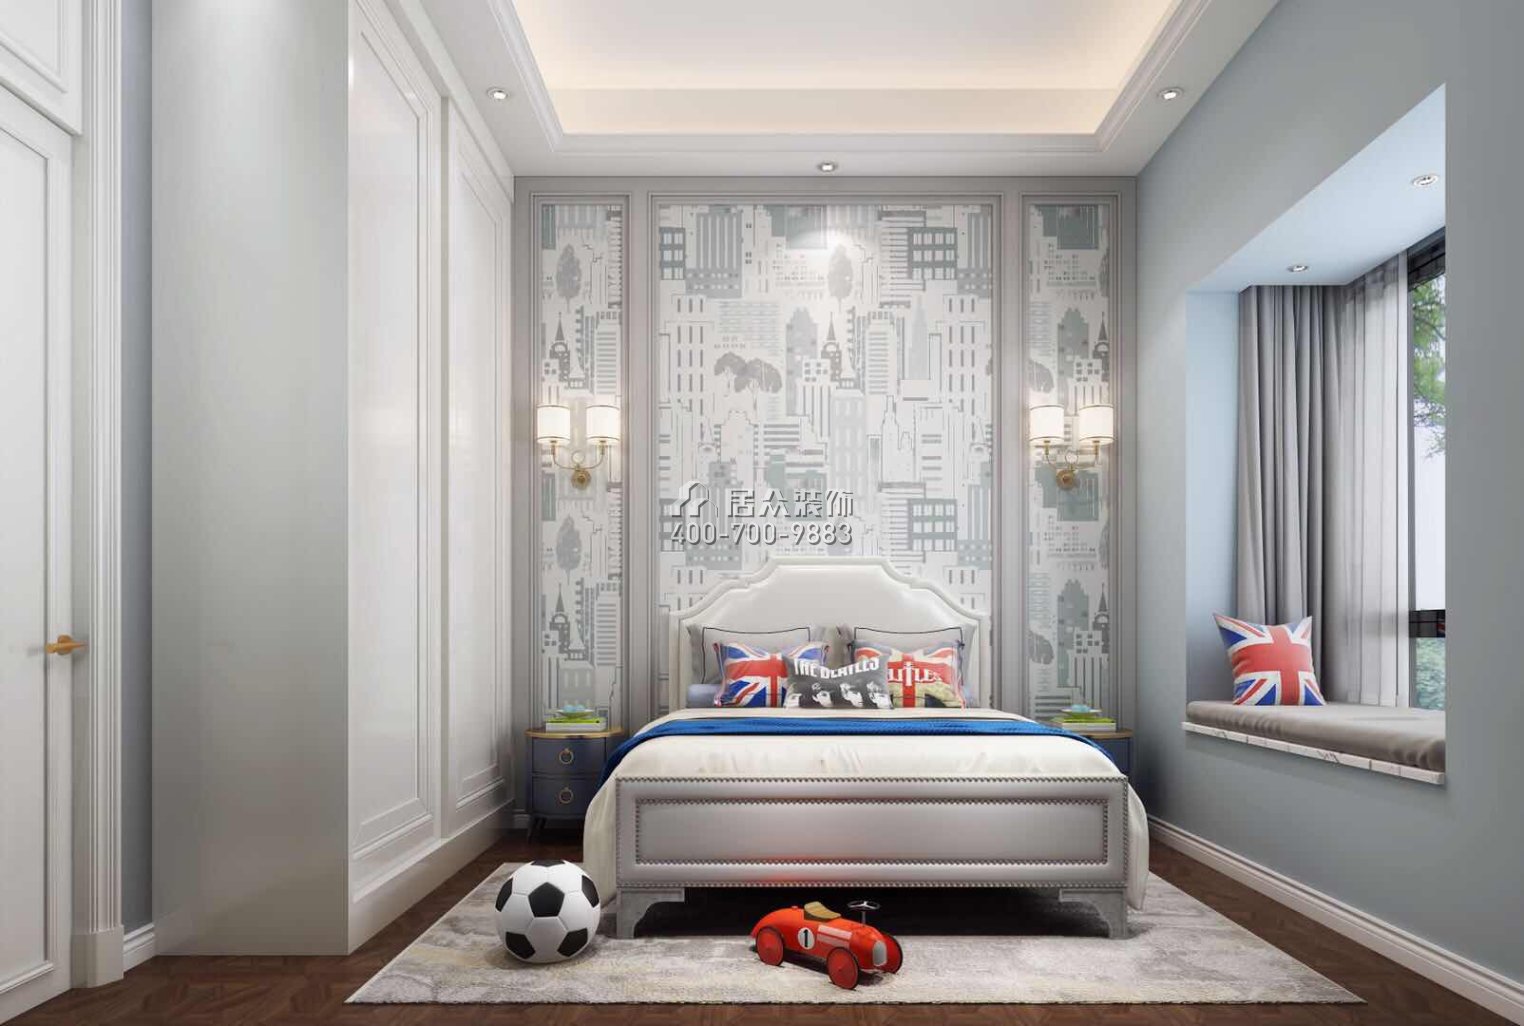 新世紀上河居360平方米歐式風格復式戶型臥室裝修效果圖